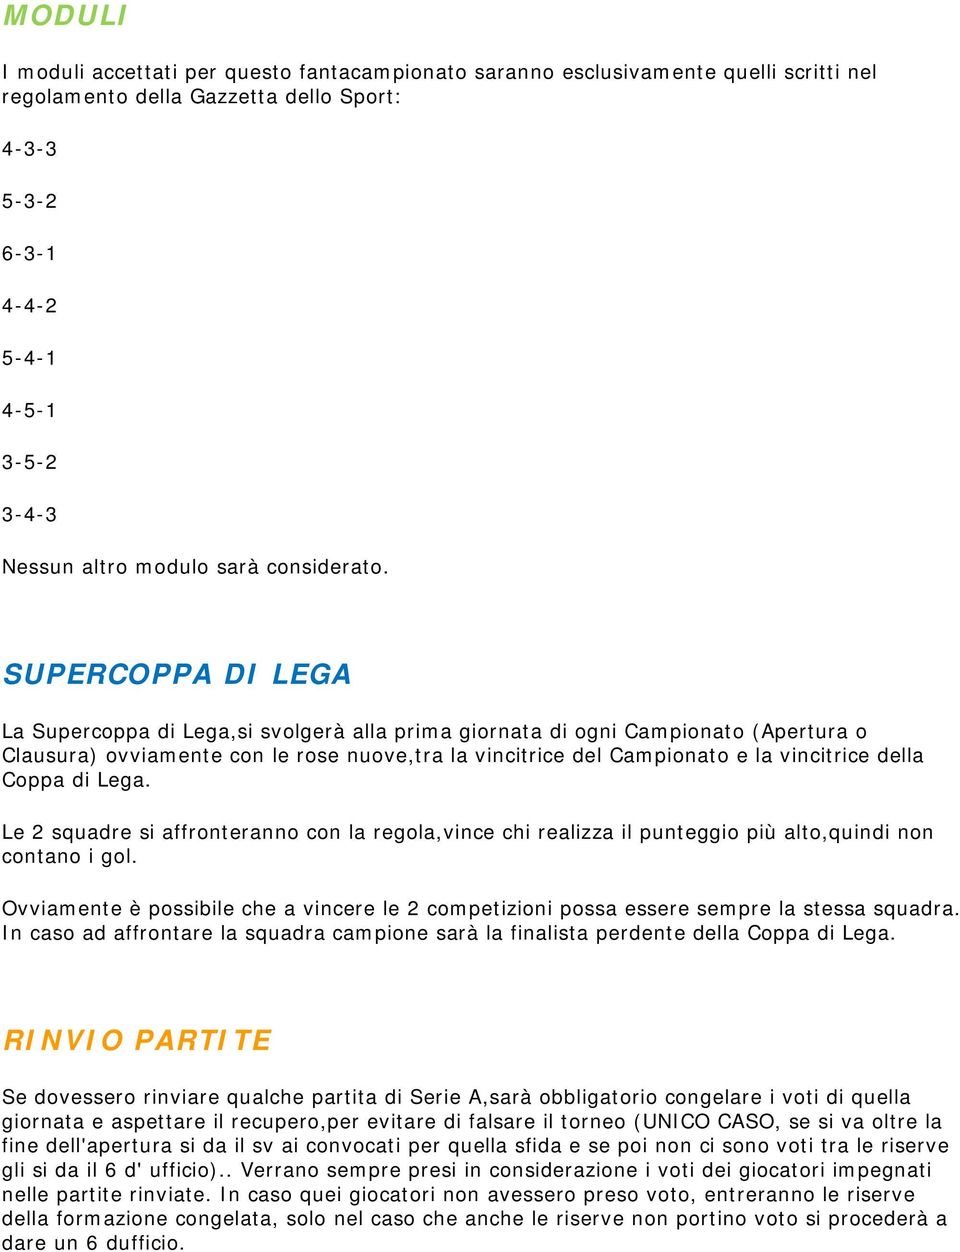 SUPERCOPPA DI LEGA La Supercoppa di Lega,si svolgerà alla prima giornata di ogni Campionato (Apertura o Clausura) ovviamente con le rose nuove,tra la vincitrice del Campionato e la vincitrice della